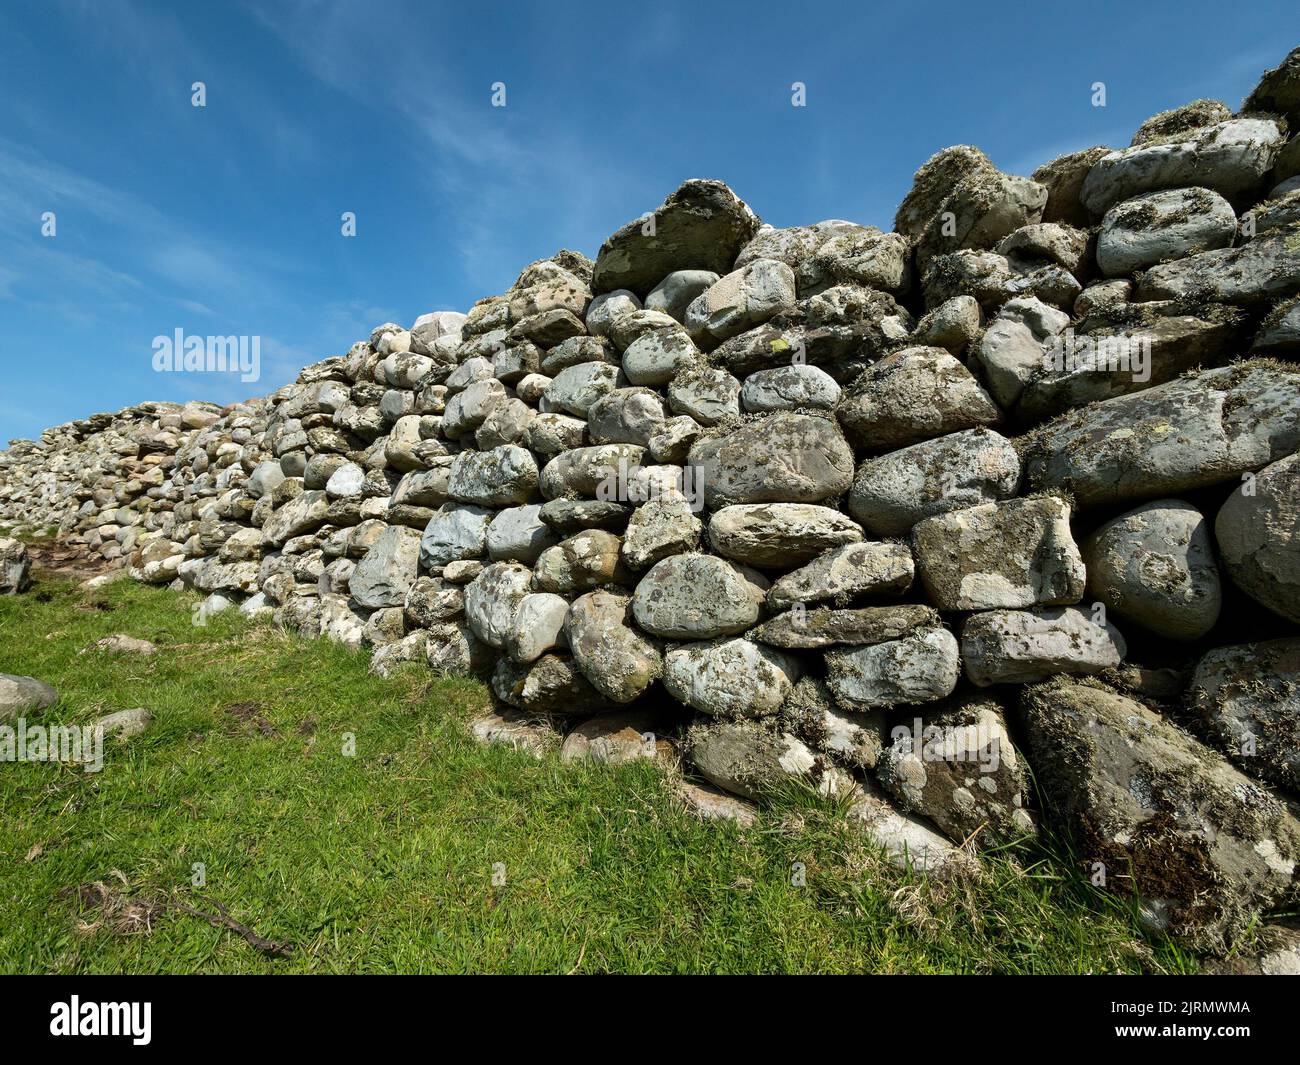 Pared de piedra de yeso cubierta de liquen, hecha de cantos rodados redondos y guijarros de playa, Balnahard, Isla de Colonsay, Escocia, Reino Unido Foto de stock